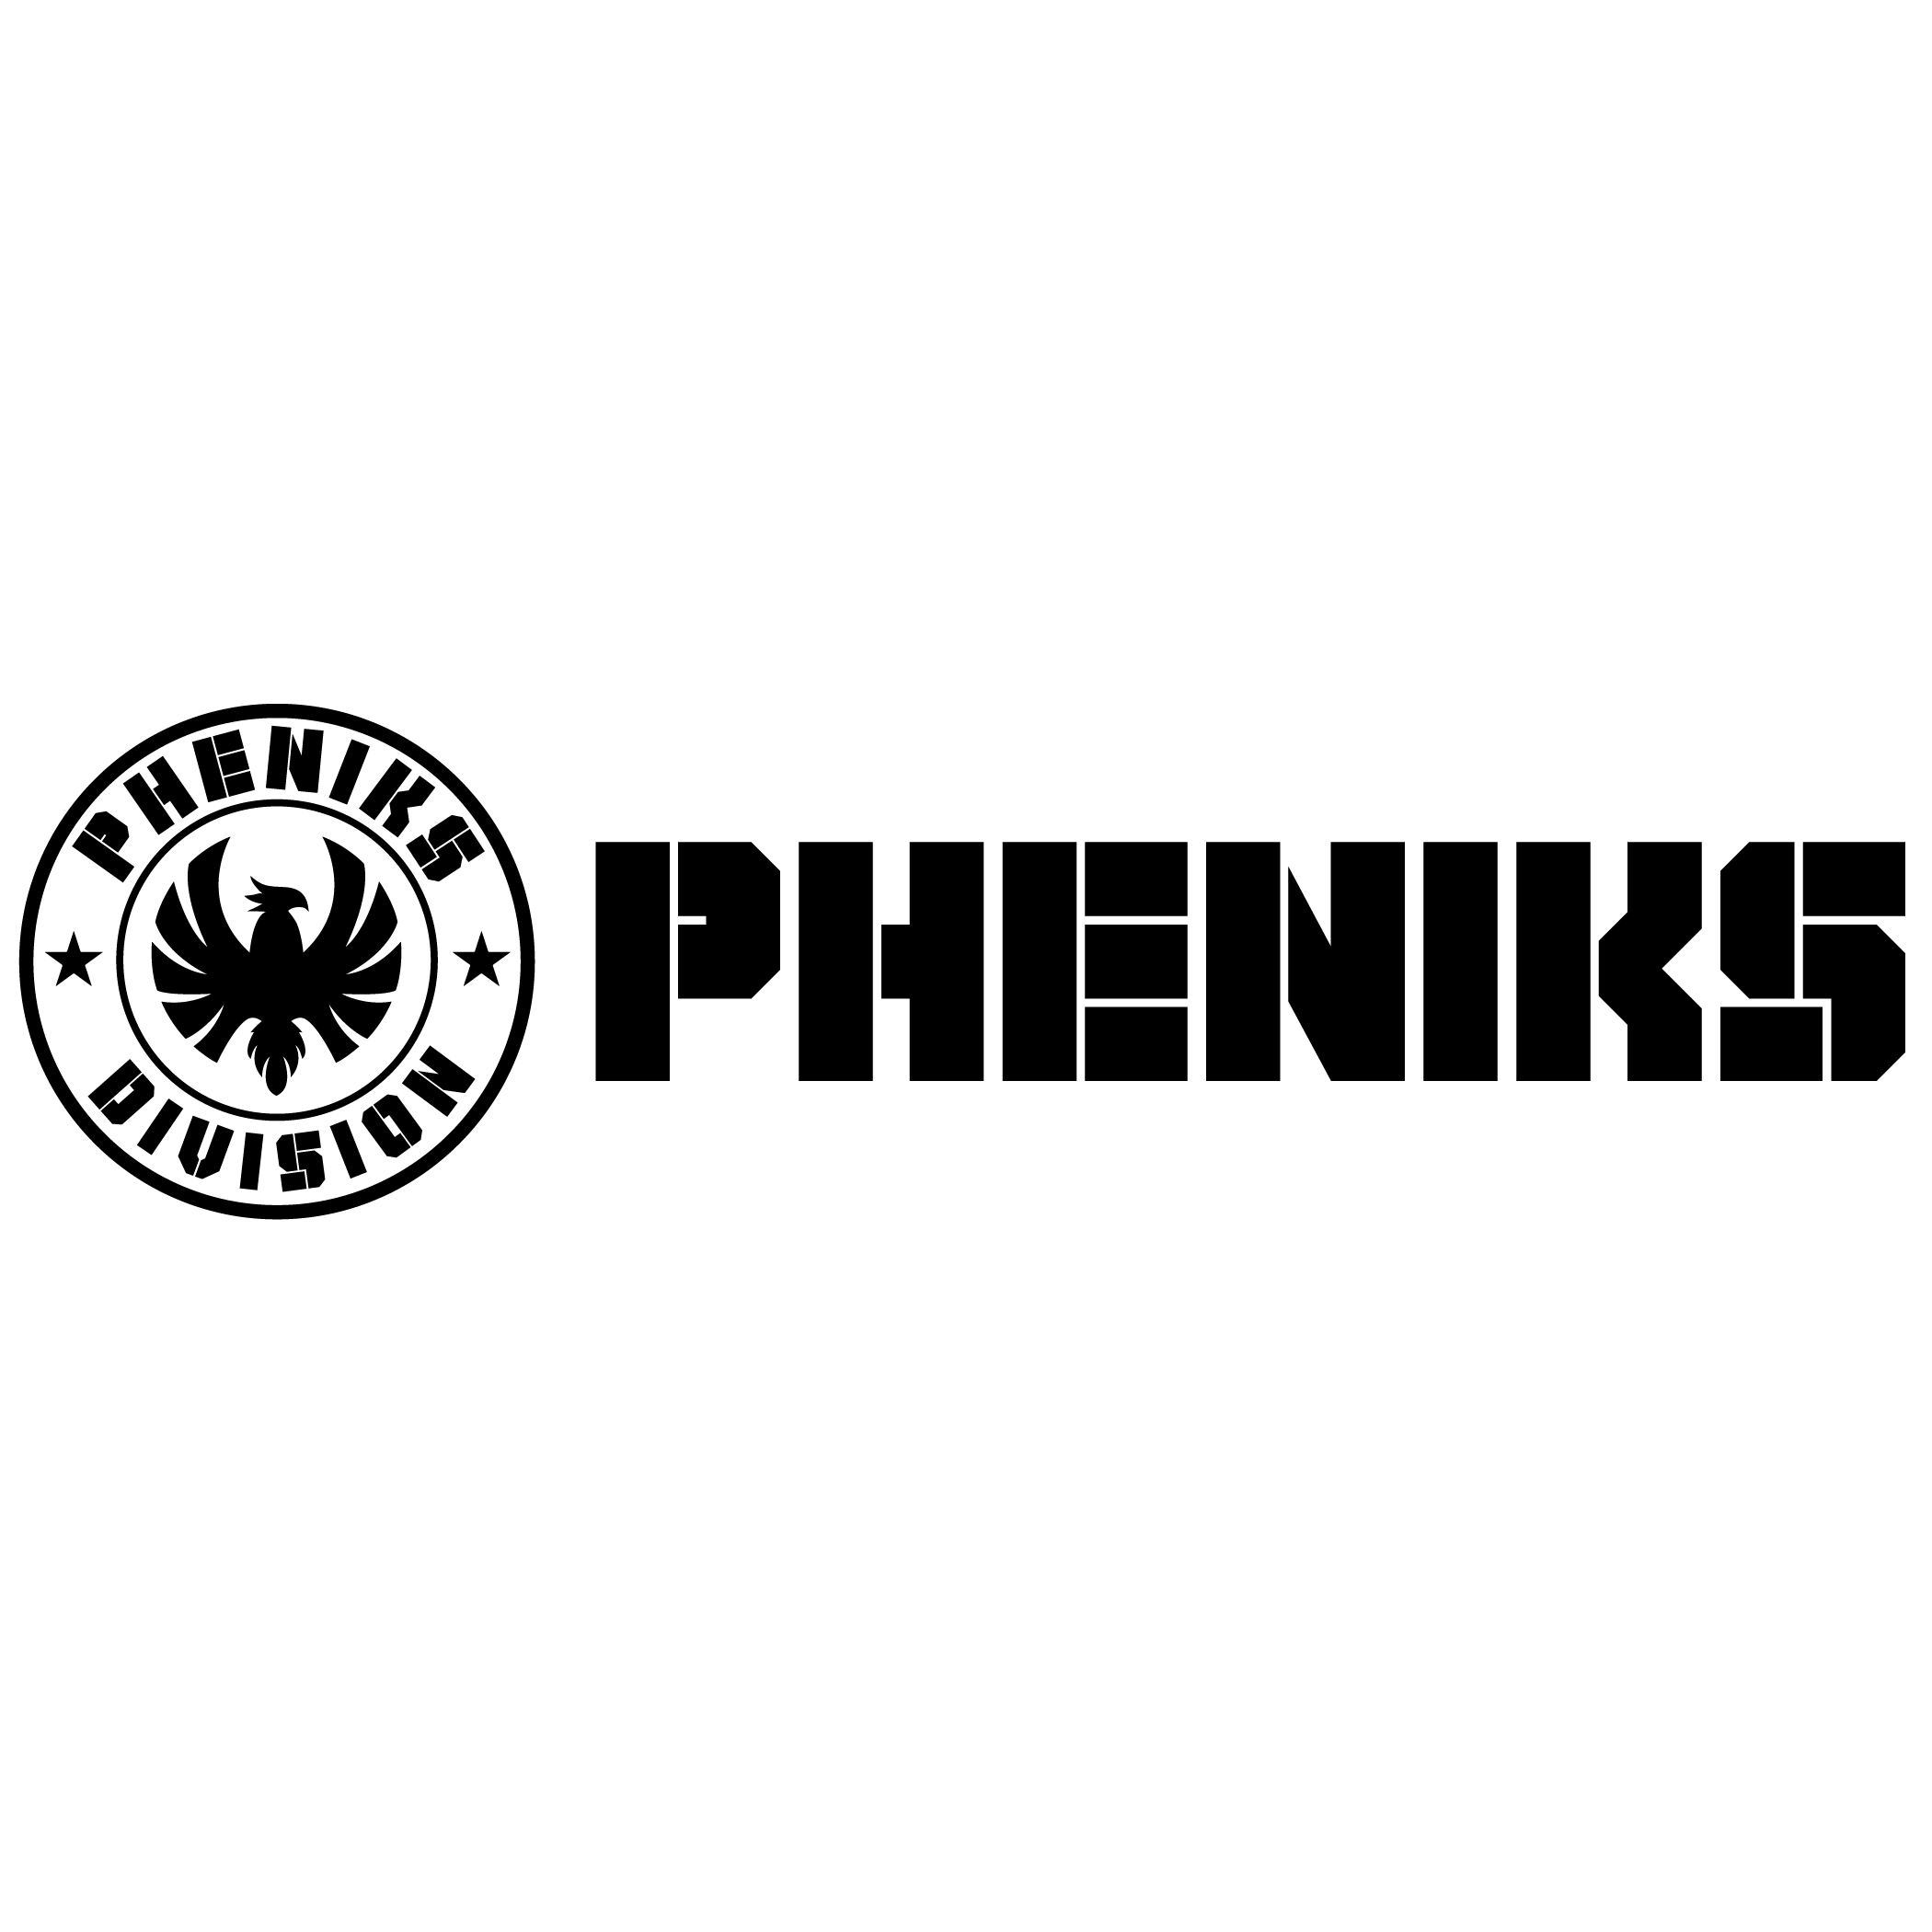 Pheniks